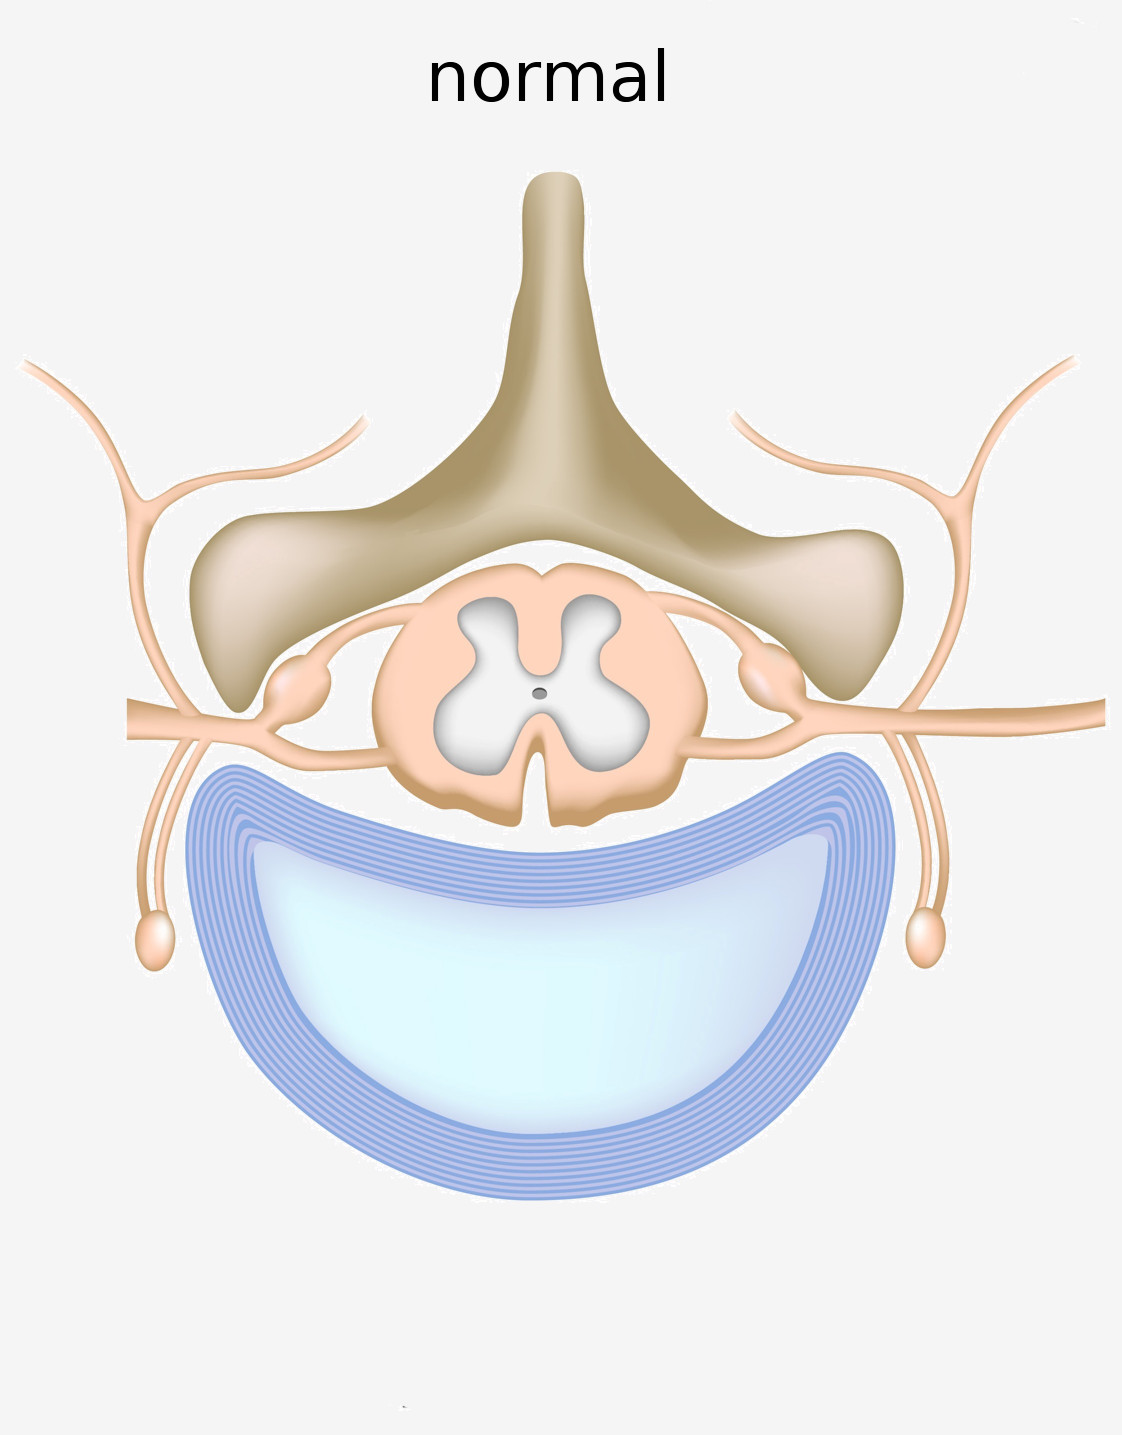 schéma d'une vertebre normal et des nerfs